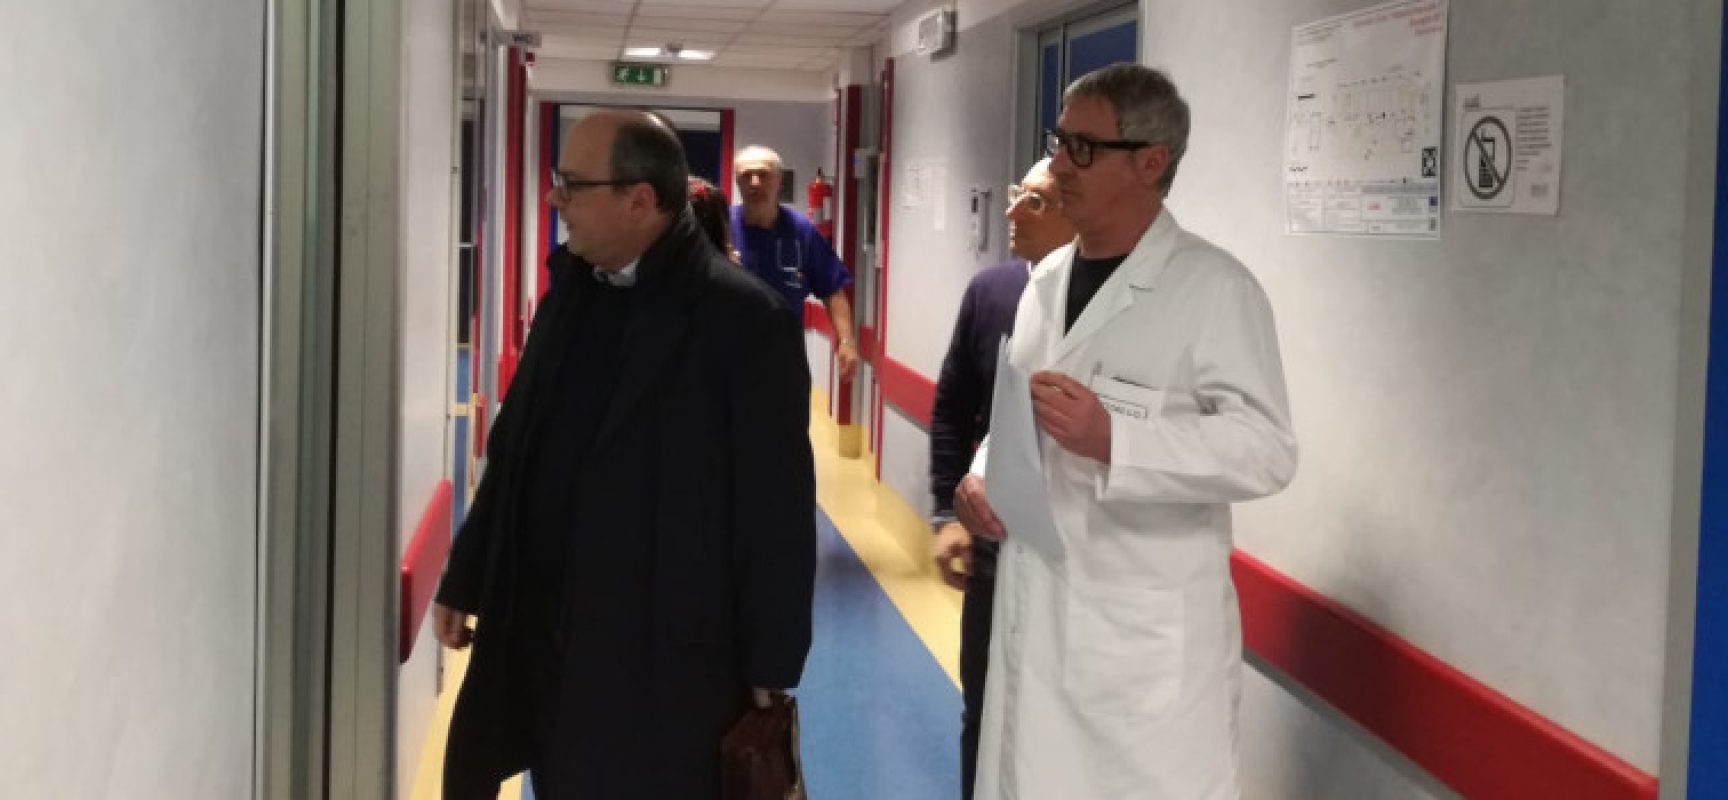 Direttore Asl Bat visita ospedale di Bisceglie: “Presto lavori al Pronto Soccorso”